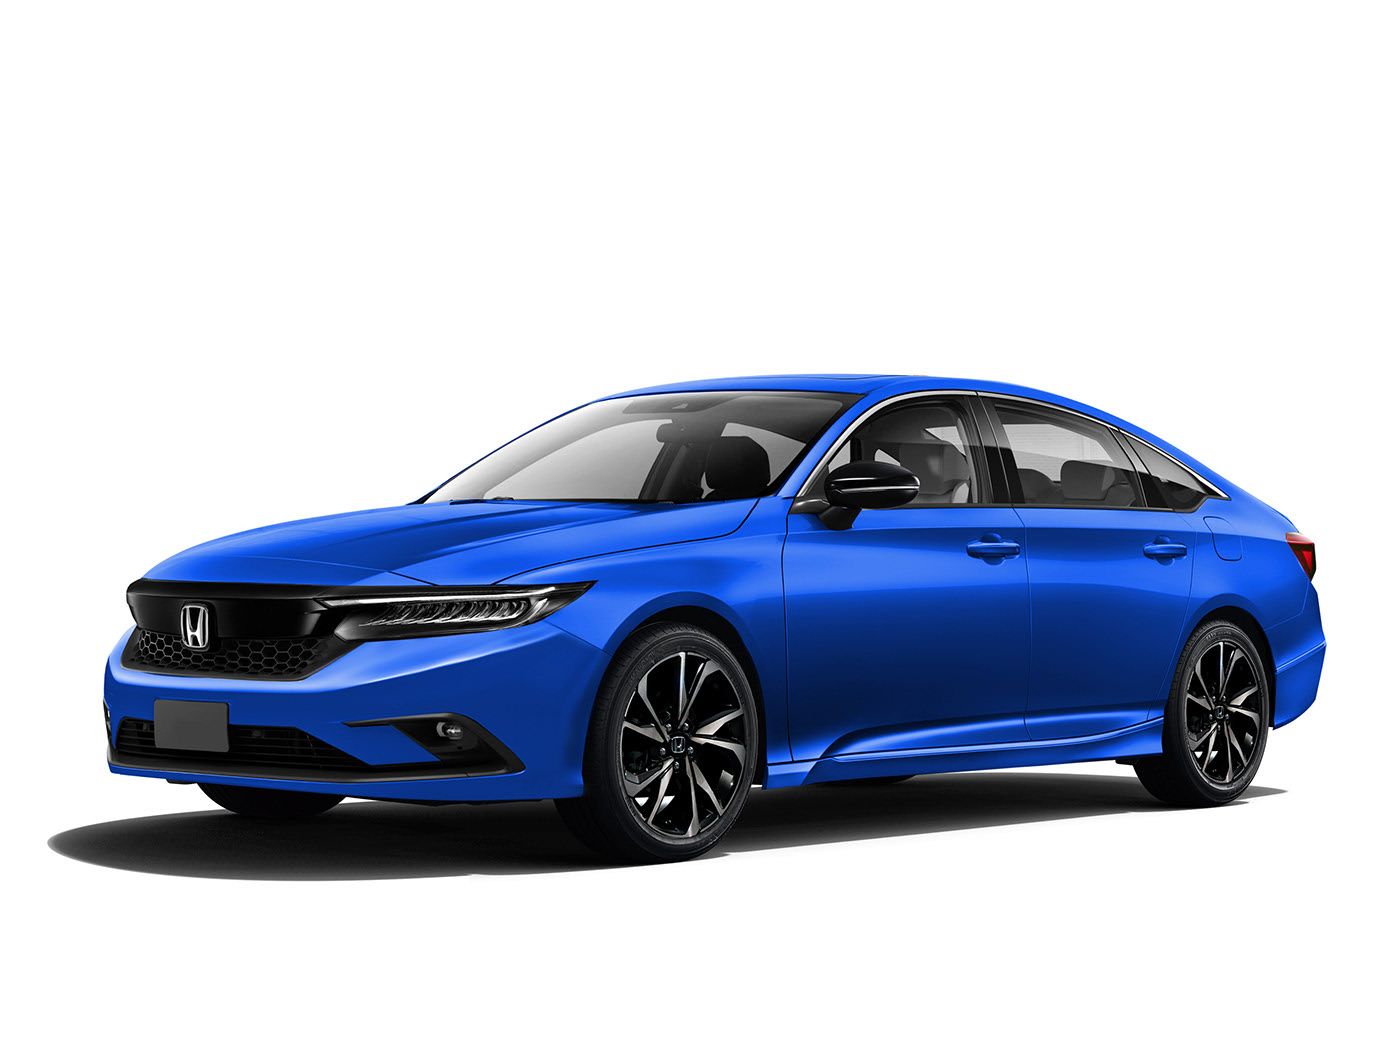 Honda's All New Civic Sedan Rendered, 2022 Model Looks Grown Up